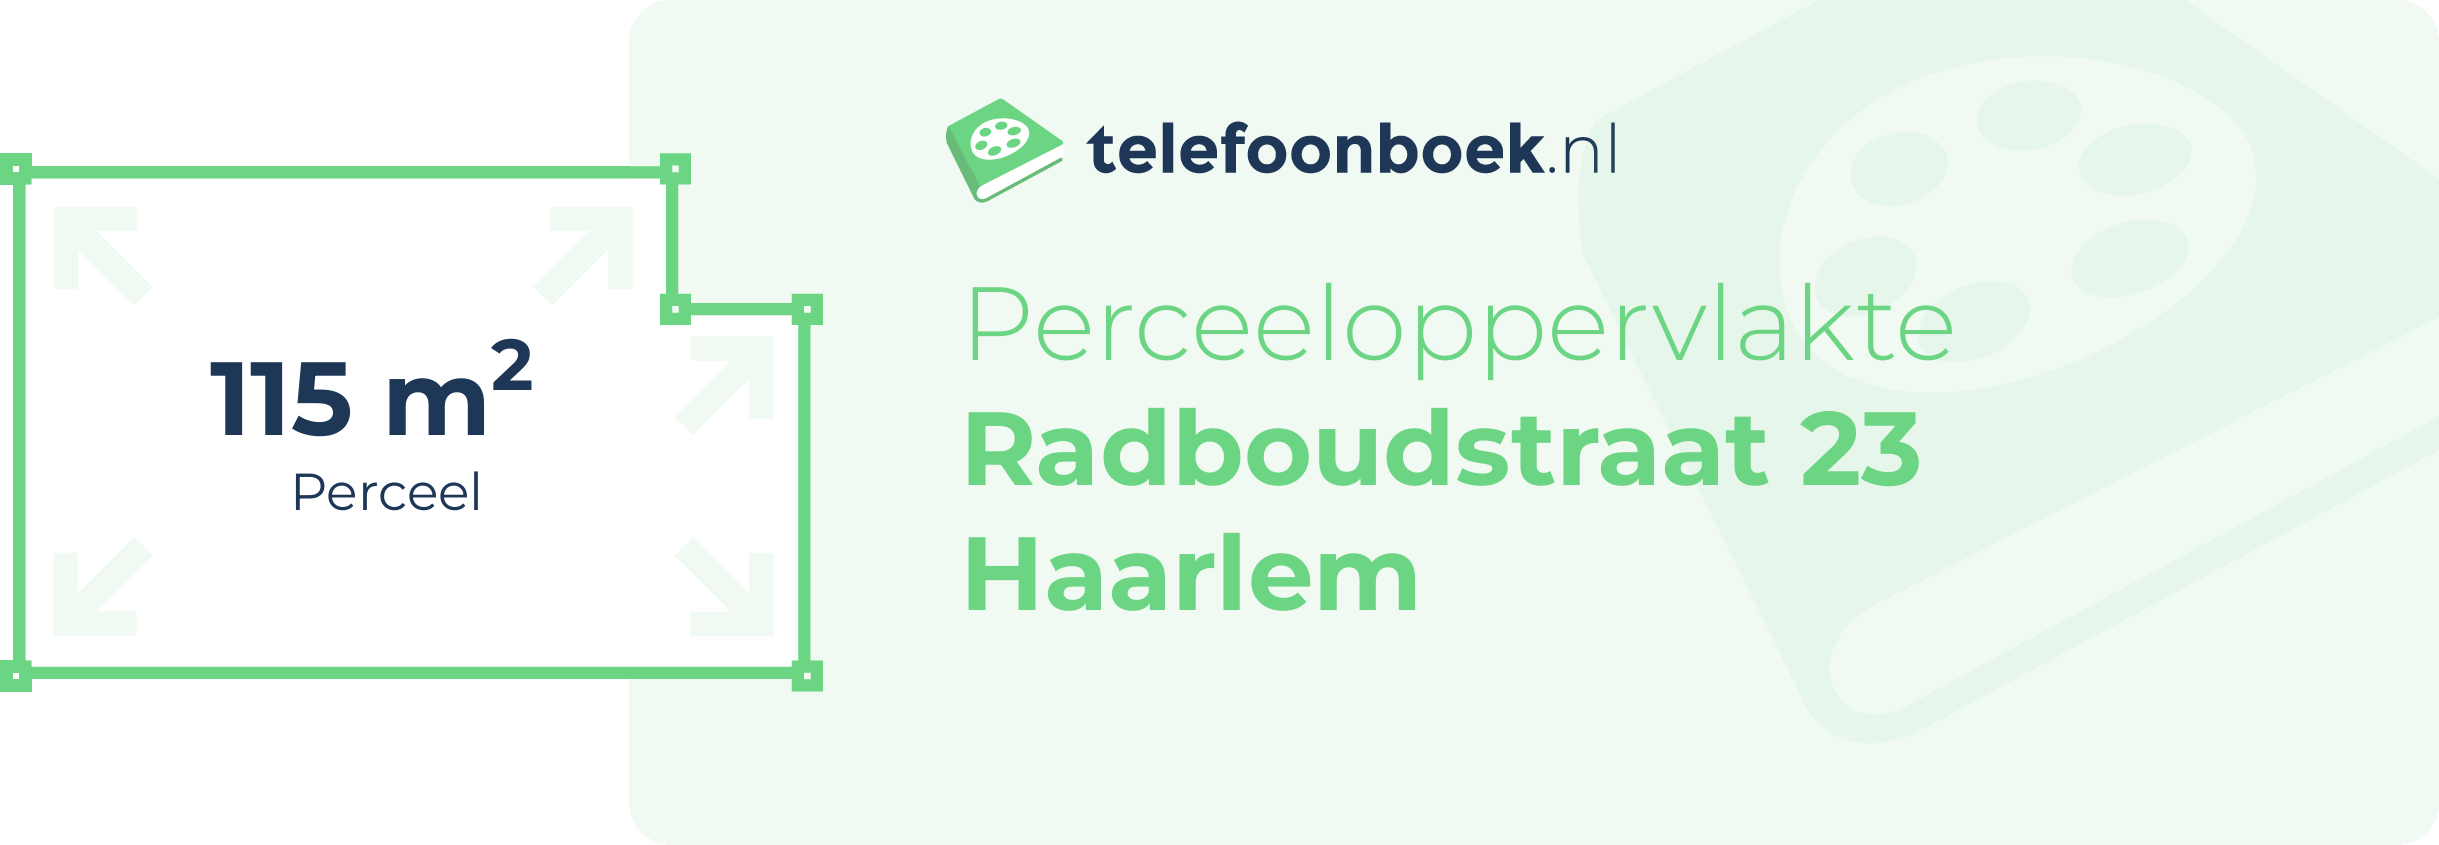 Perceeloppervlakte Radboudstraat 23 Haarlem